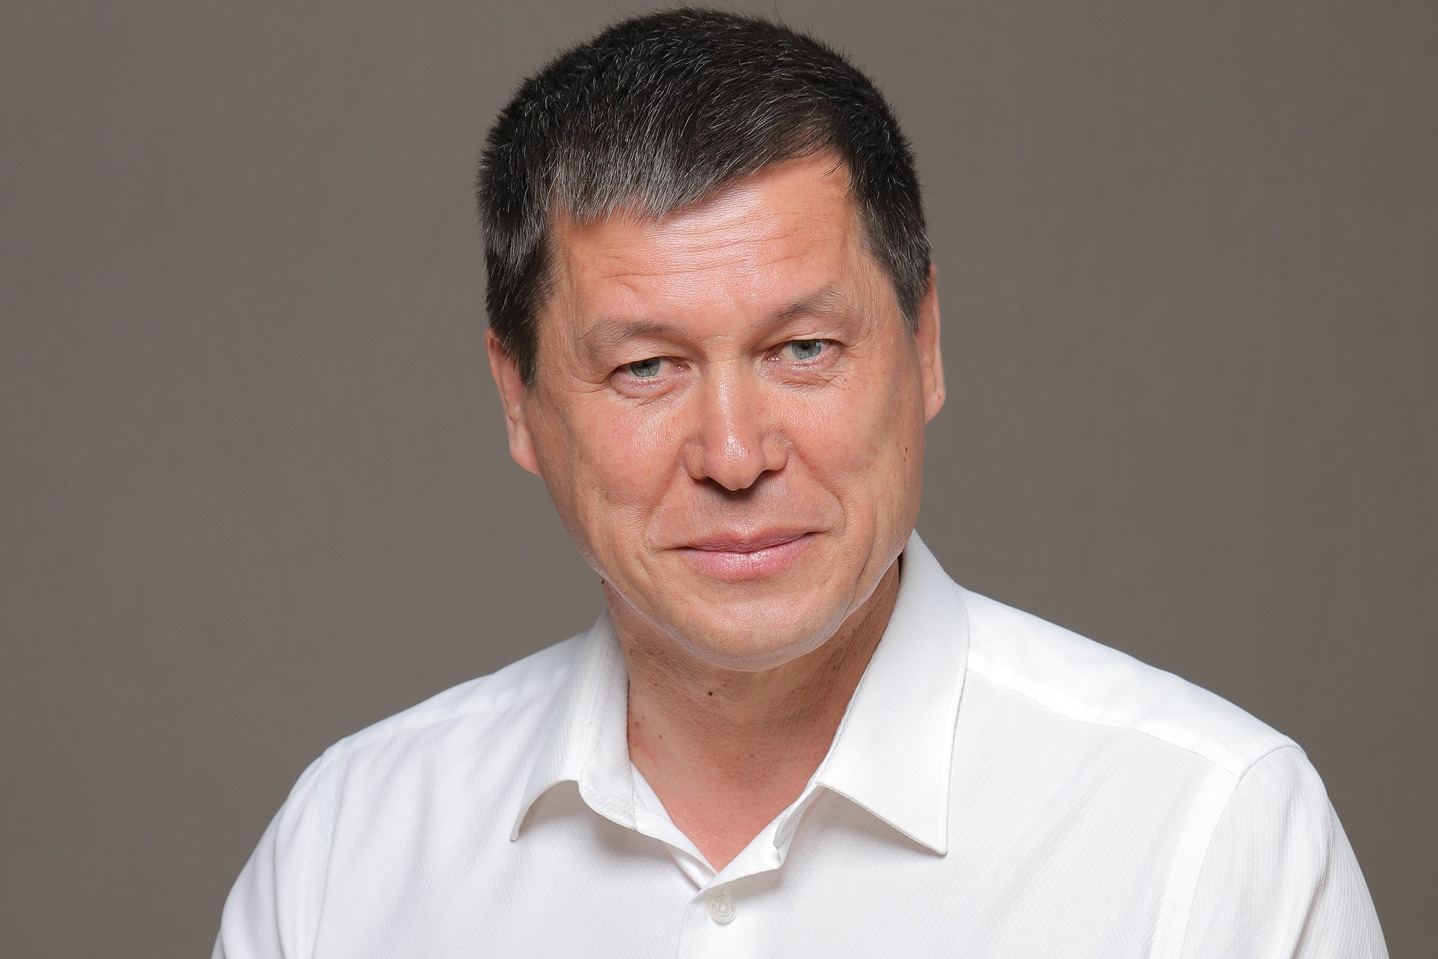 Зариф Байгускаров депутат Госдумы РФ VII и VIII созывов (с 2016 года)